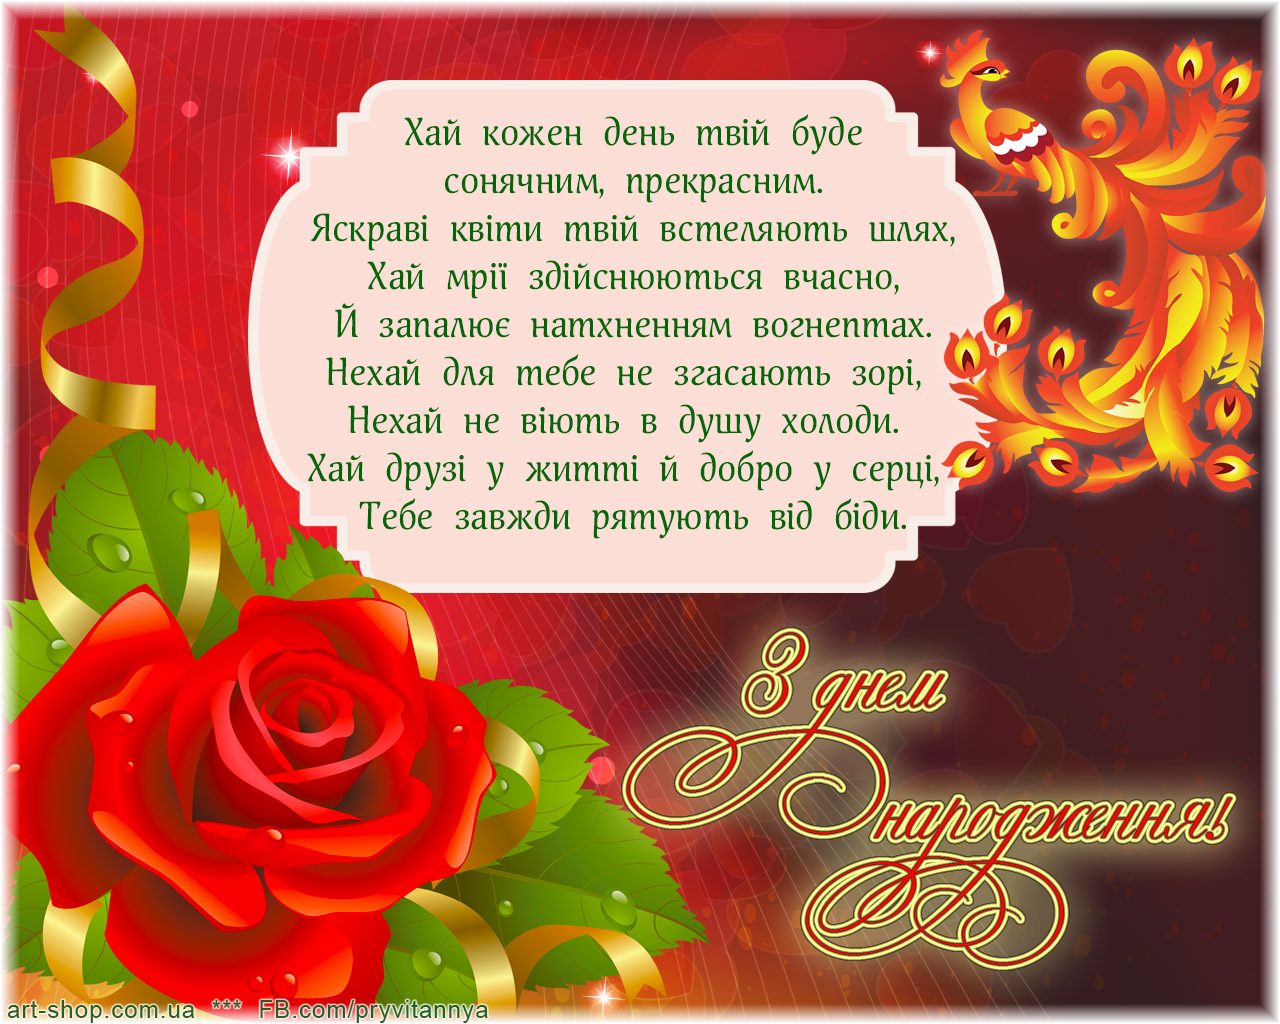 С днем рождения сестре на украинском. Привітання з днем народження. Открытка с днем рождения на украинском. Поздравления с днём рождения на украинском языке. Красивое поздравление с днём рождения на украинском языке.